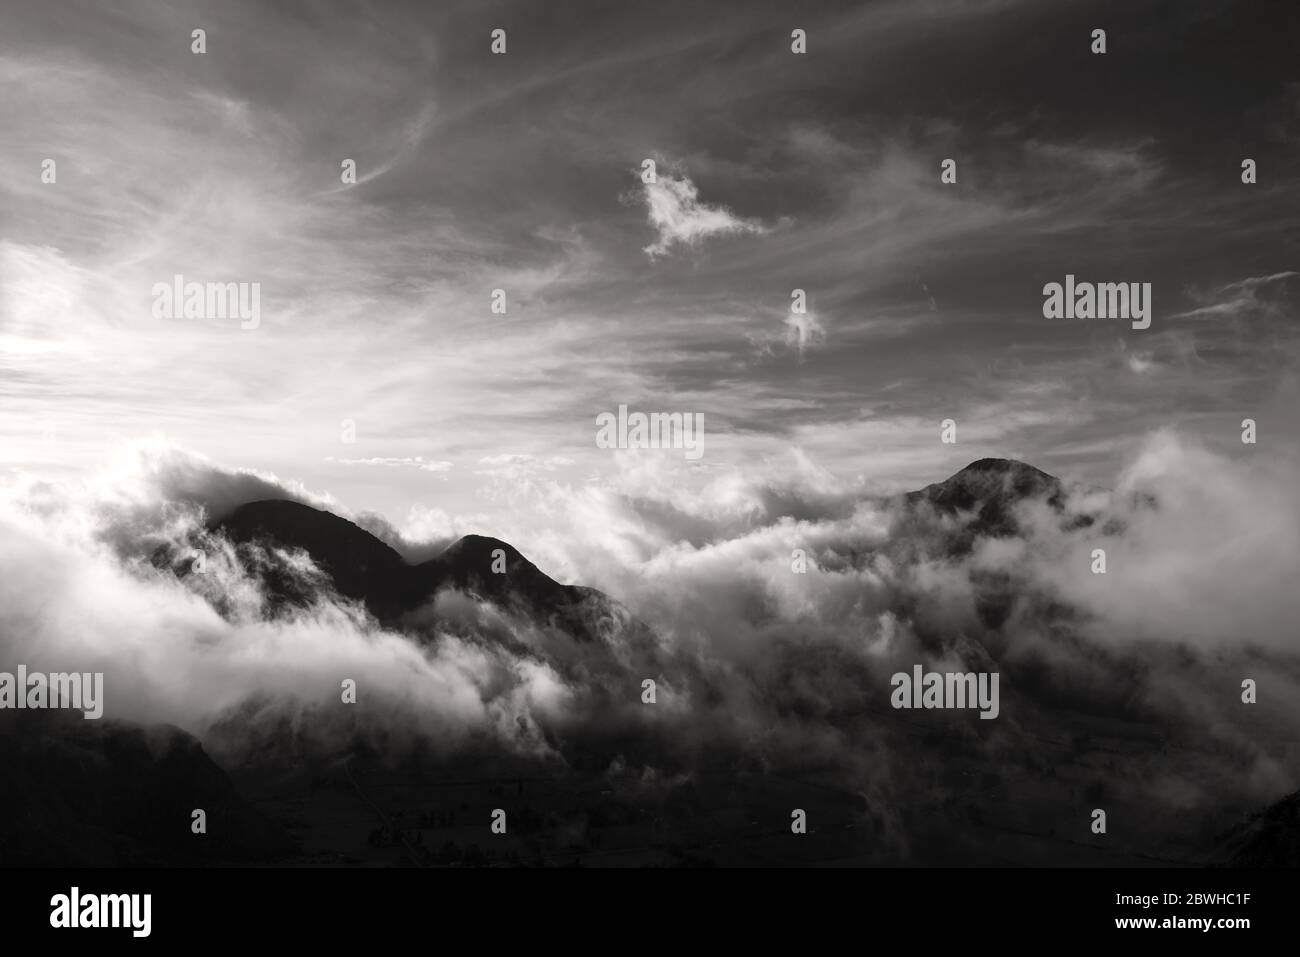 La catena montuosa delle Ande che sovrastano le nuvole in bianco e nero. Foto Stock